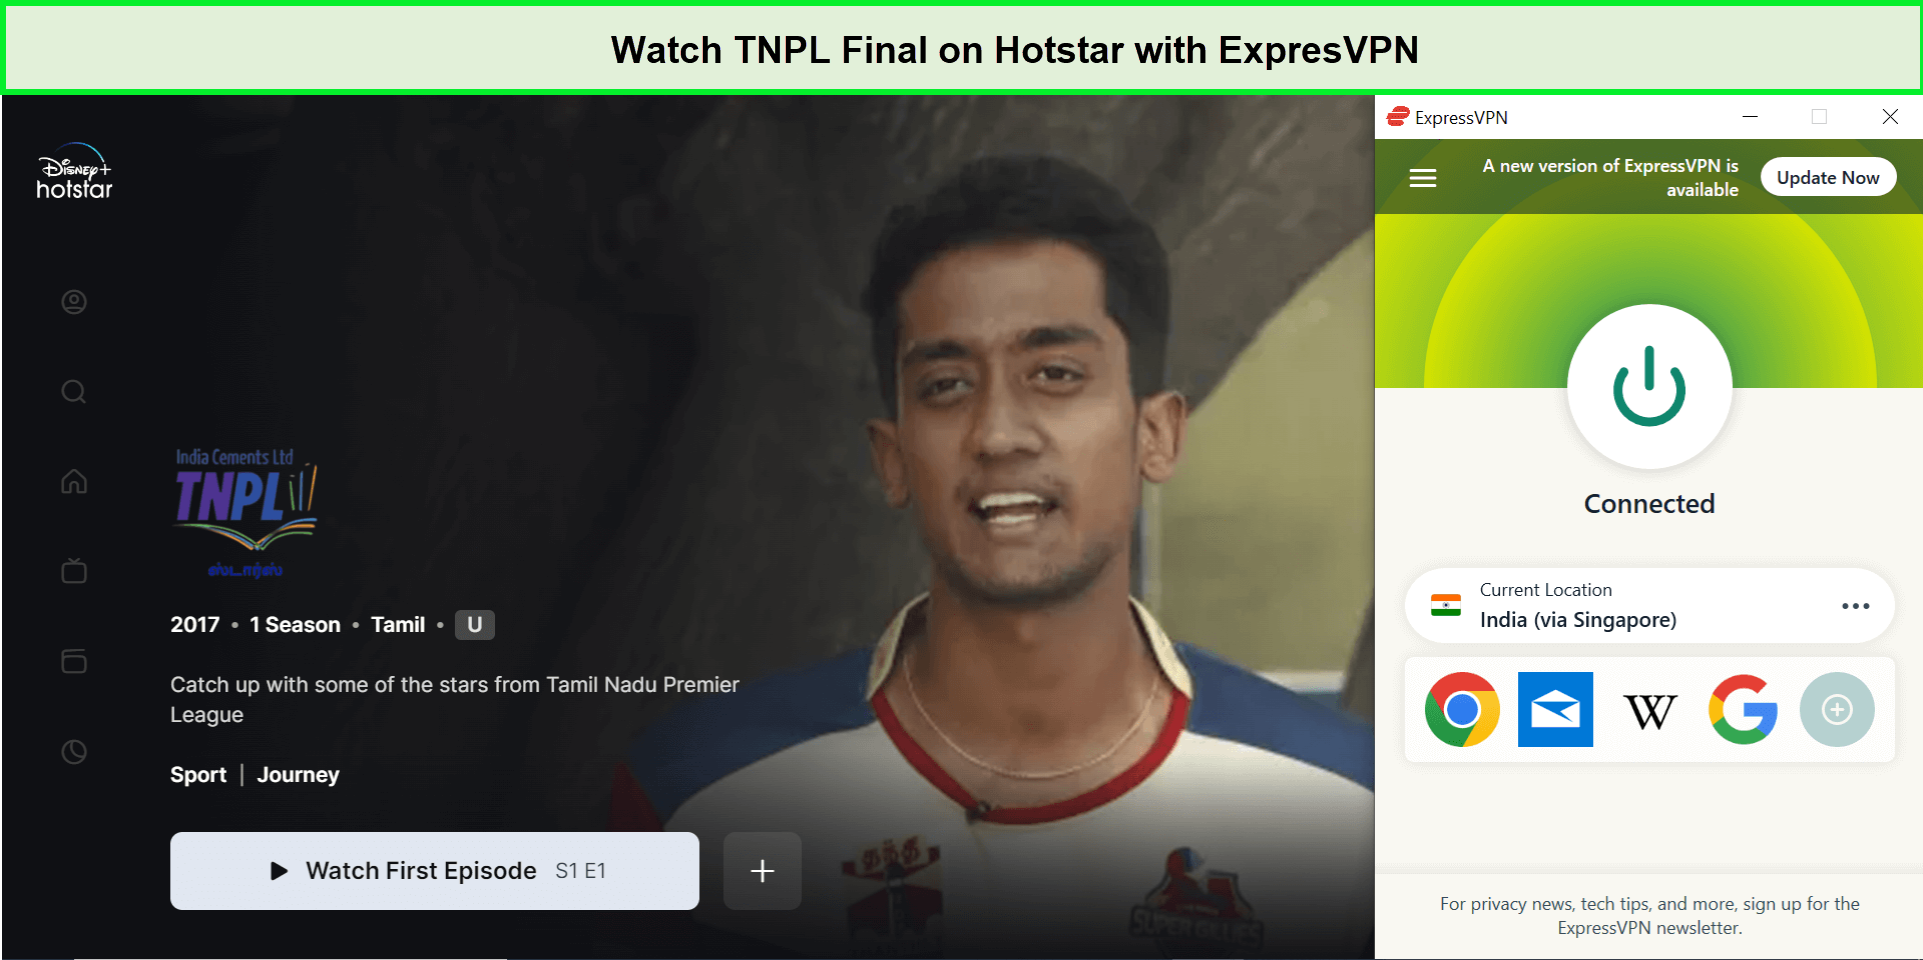 Watch-TNPL-Final-in-Australia-on-Hotstar-with-ExpresVPN